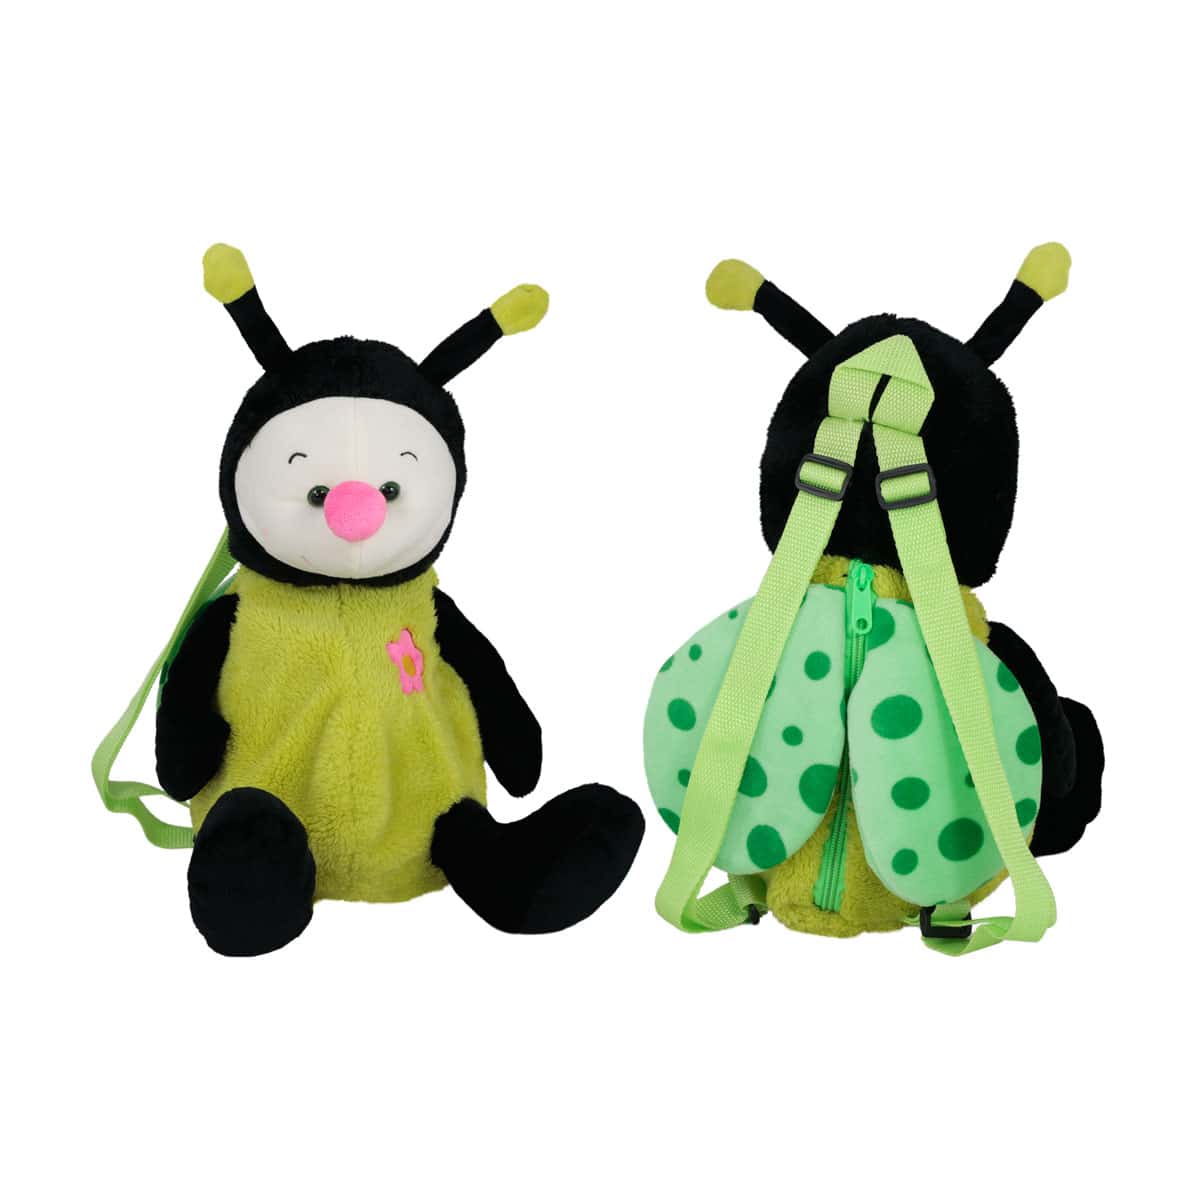 Backpack ladybug - Green